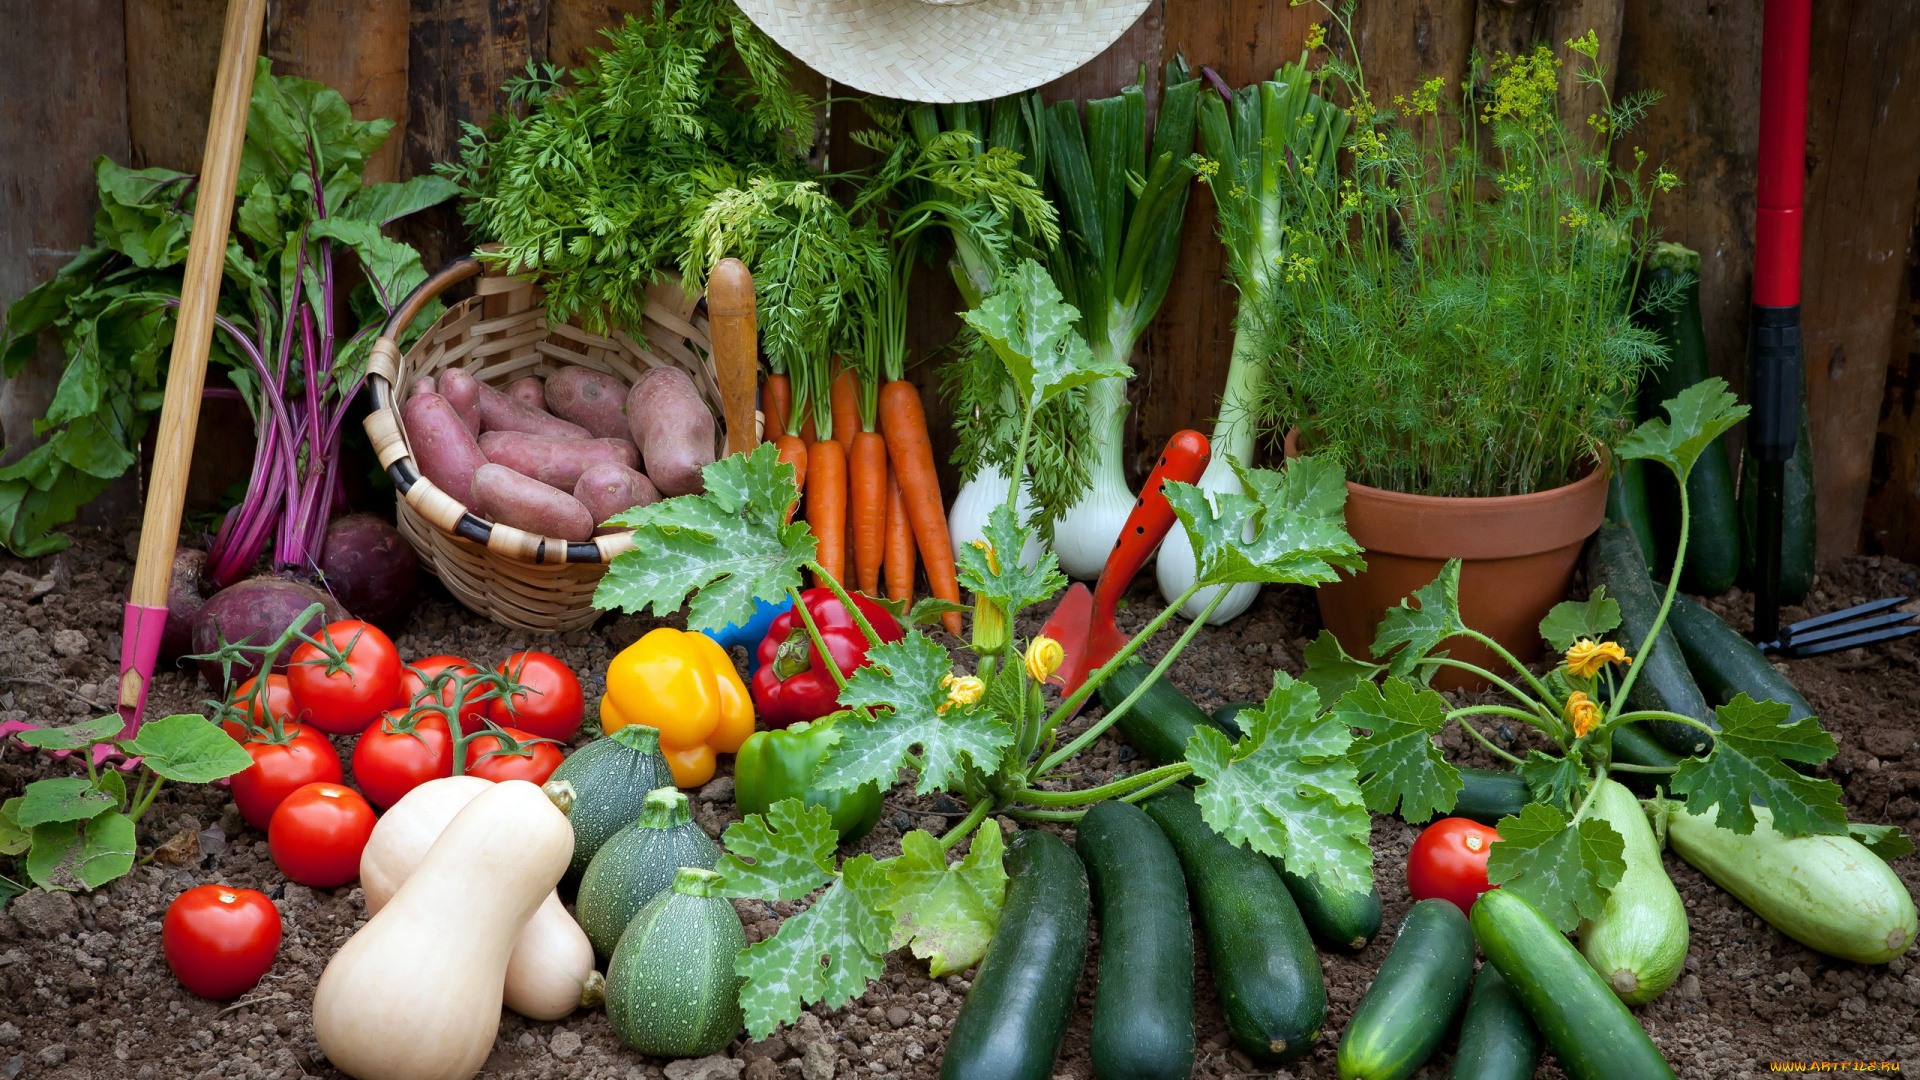 еда, овощи, помидоры, огурцы, свекла, картофель, урожай, укроп, кабачки